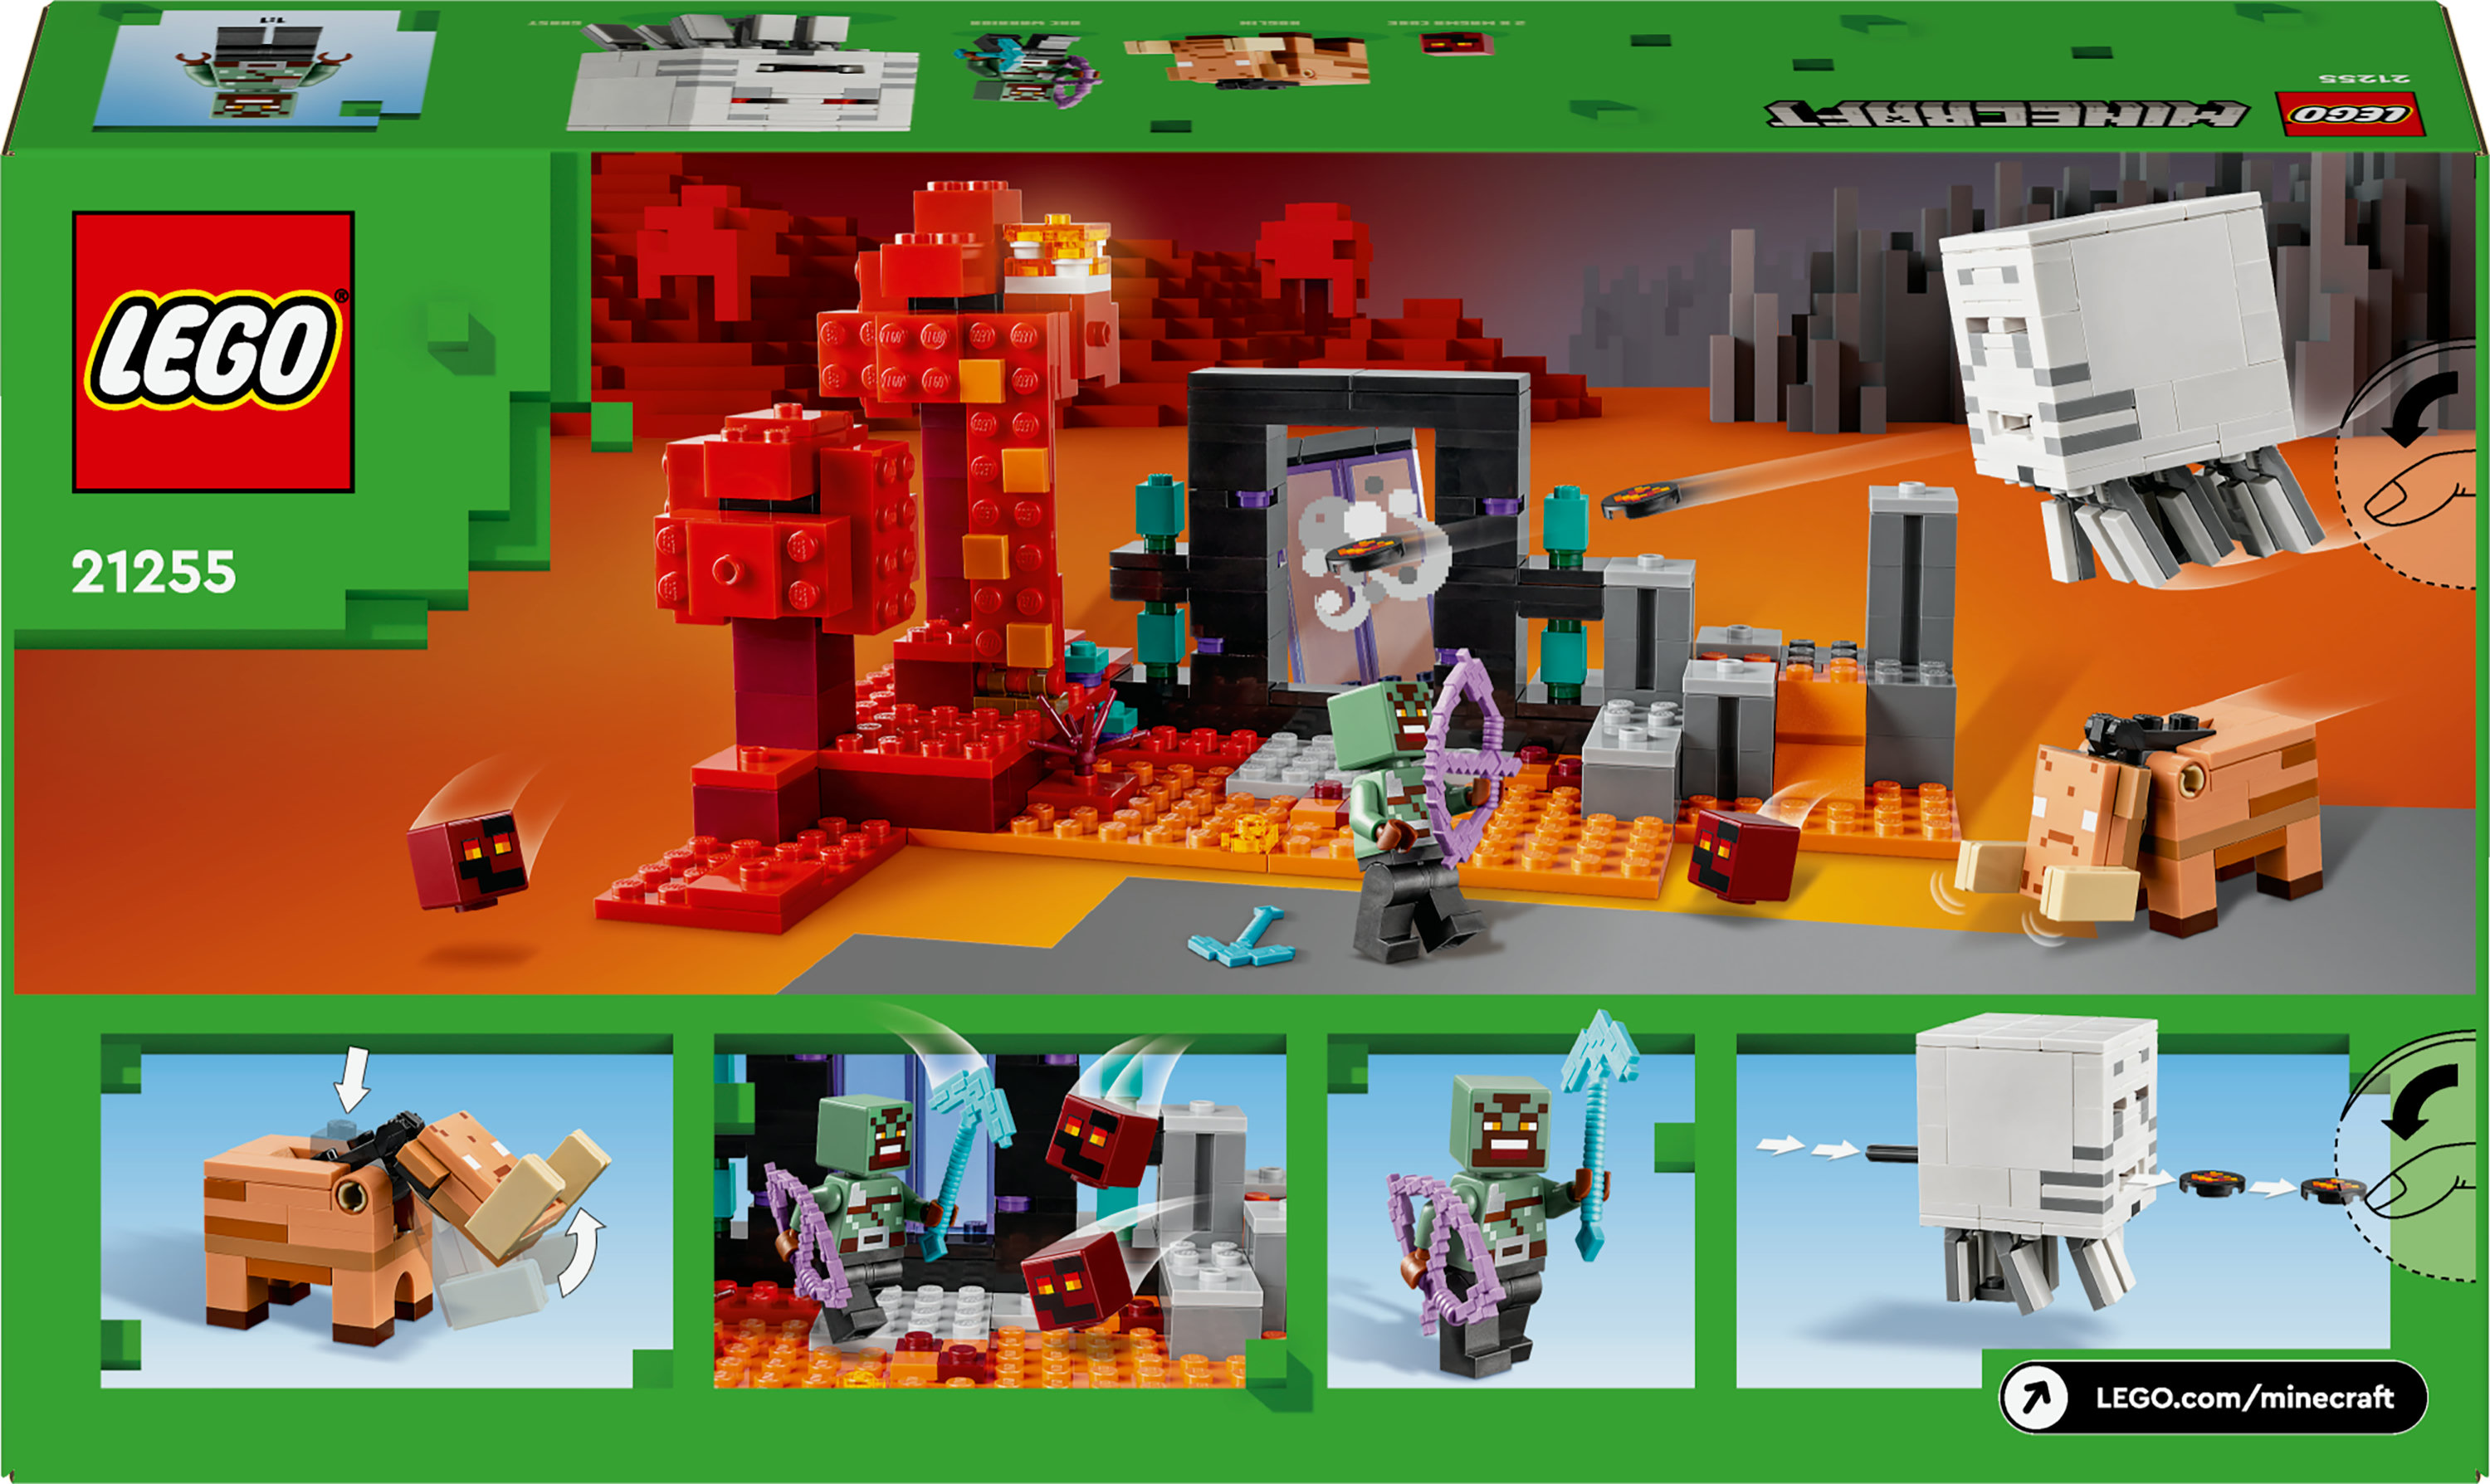 Конструктор LEGO Minecraft Засада возле портала в Нижний мир 352 детали (21255) - фото 9